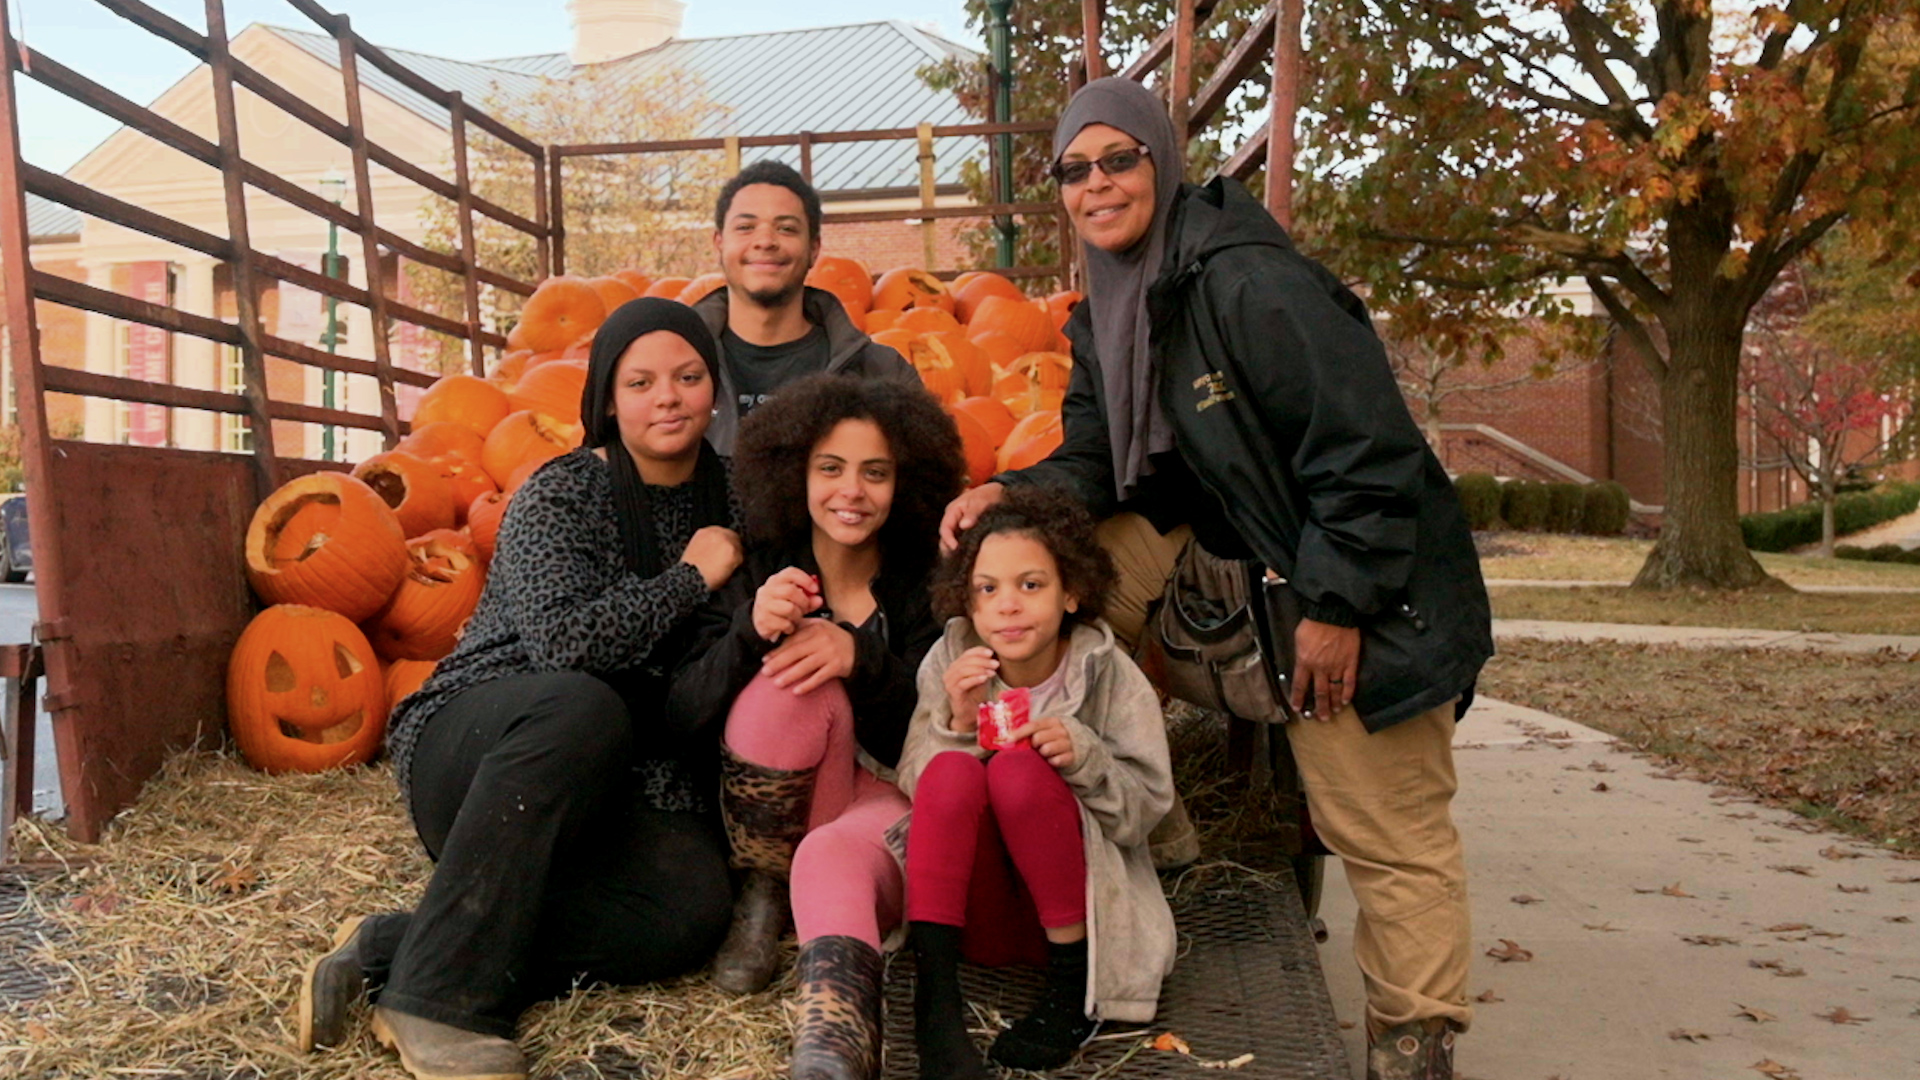 The Abraham family from Slak Market Farm